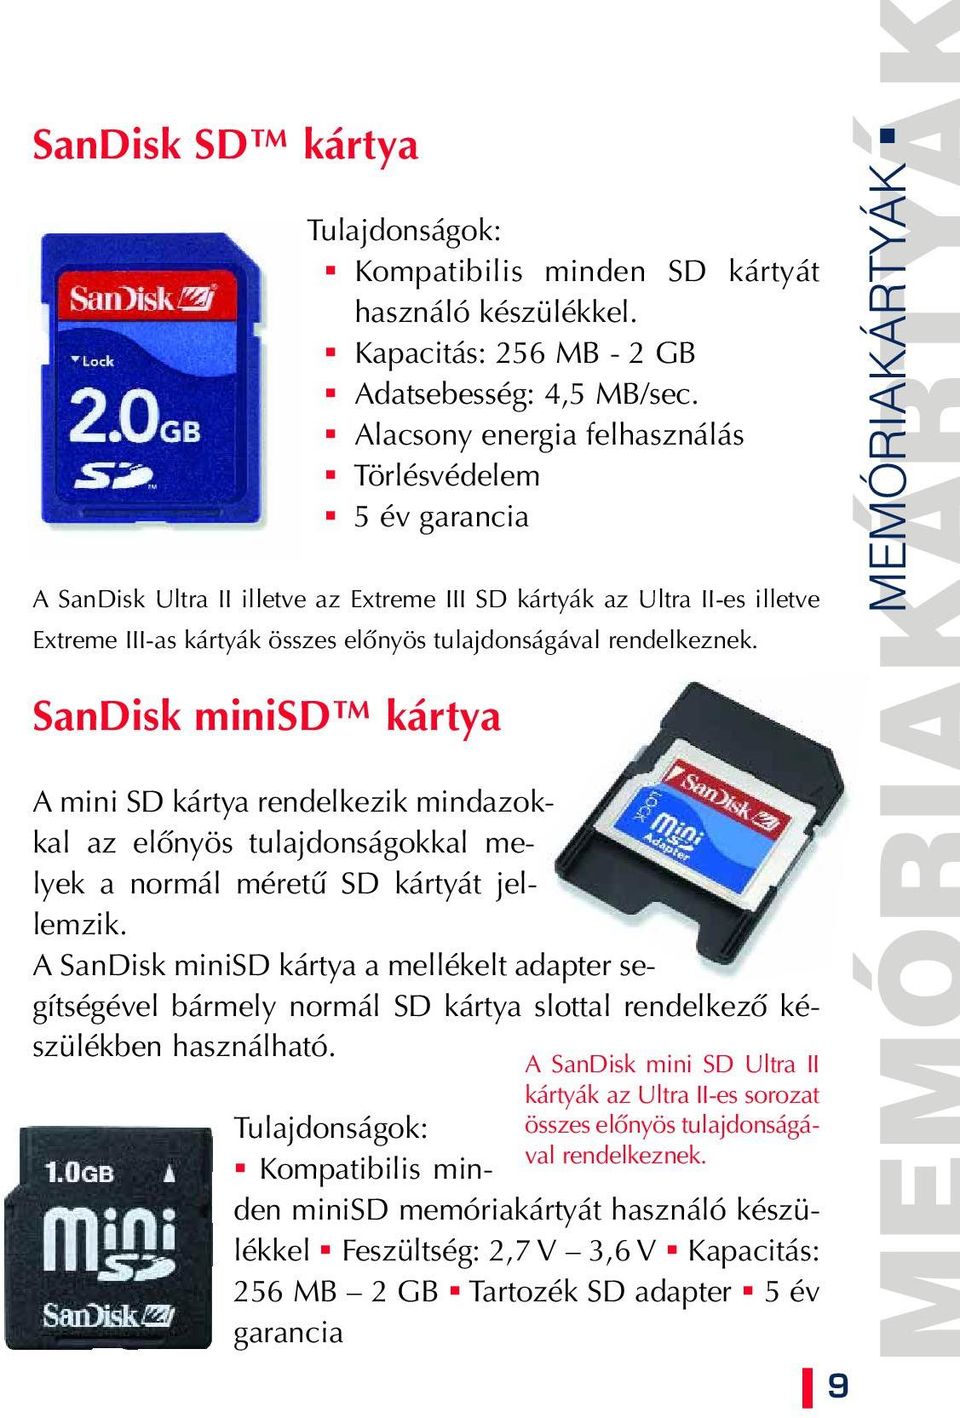 rendelkeznek. SanDisk minisd kártya A mini SD kártya rendelkezik mindazokkal az elônyös tulajdonságokkal melyek a normál méretû SD kártyát jellemzik.